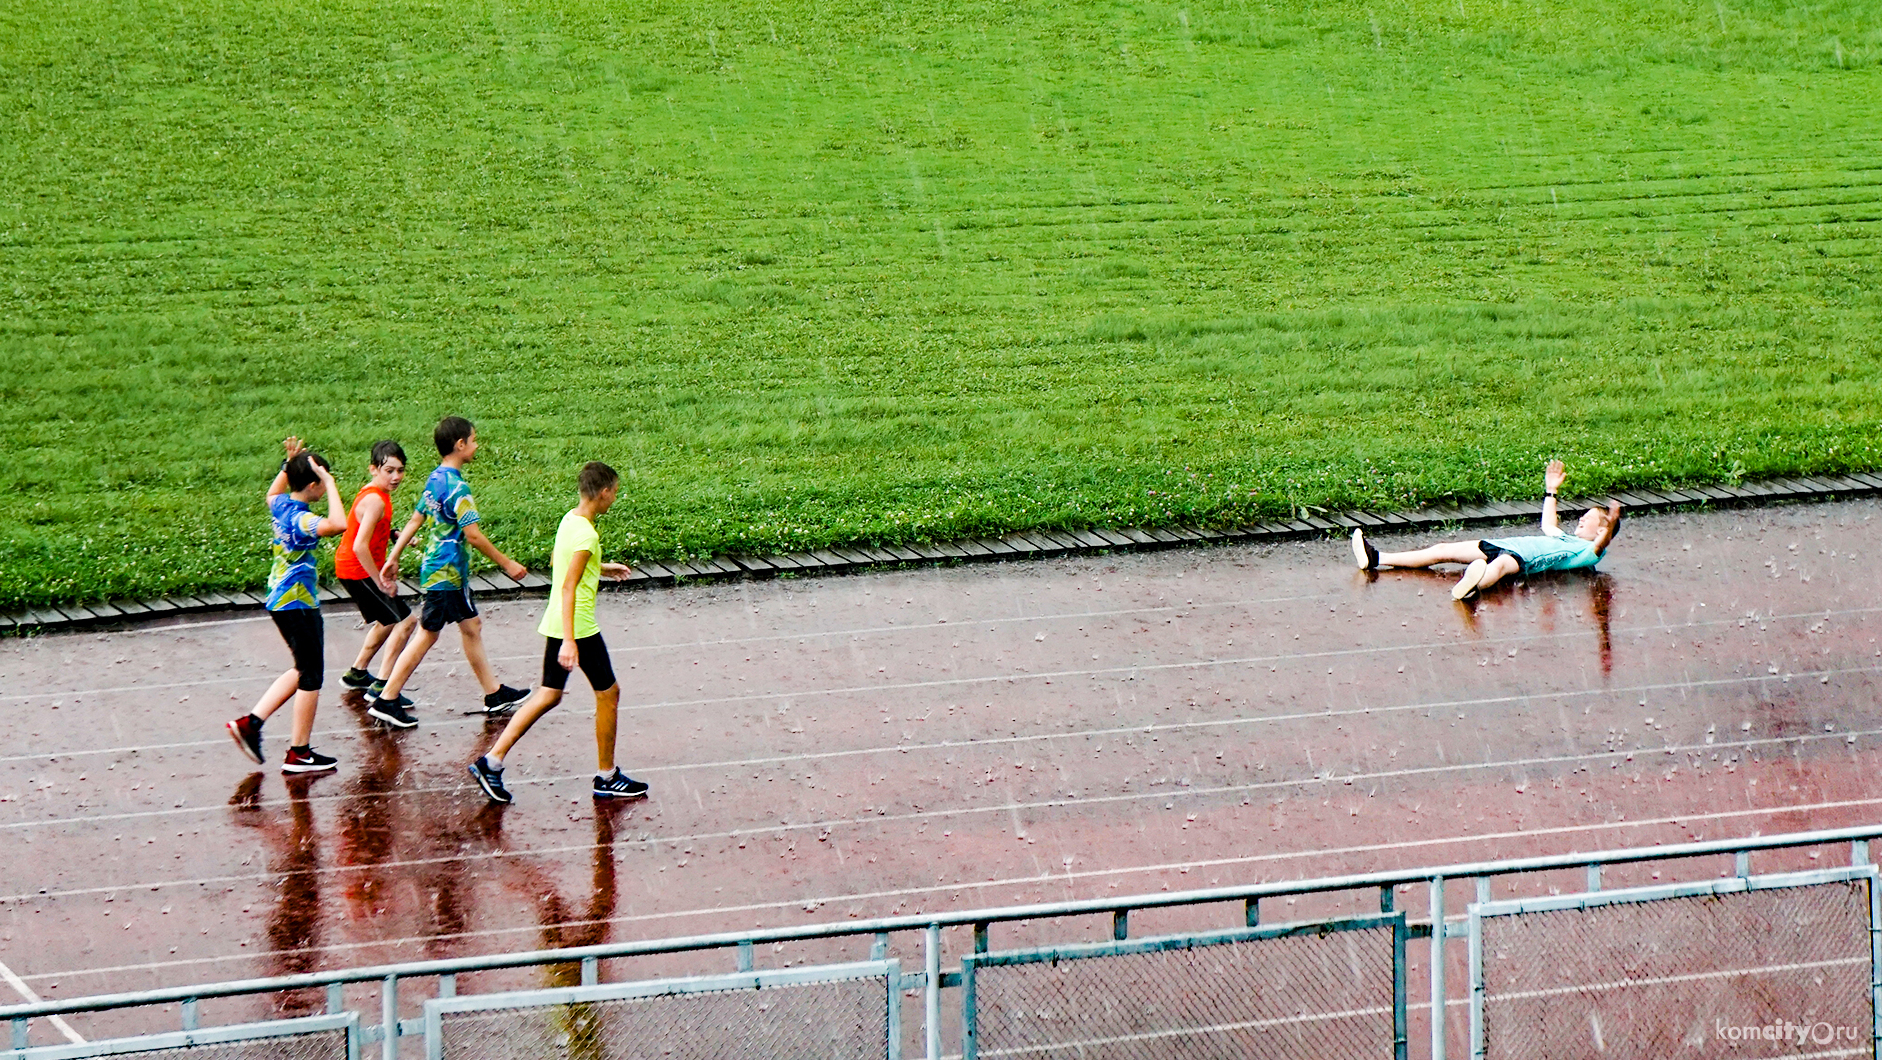 Соревнования по бегу с препятствиями состоялись в Комсомольске-на-Амуре под проливным дождём